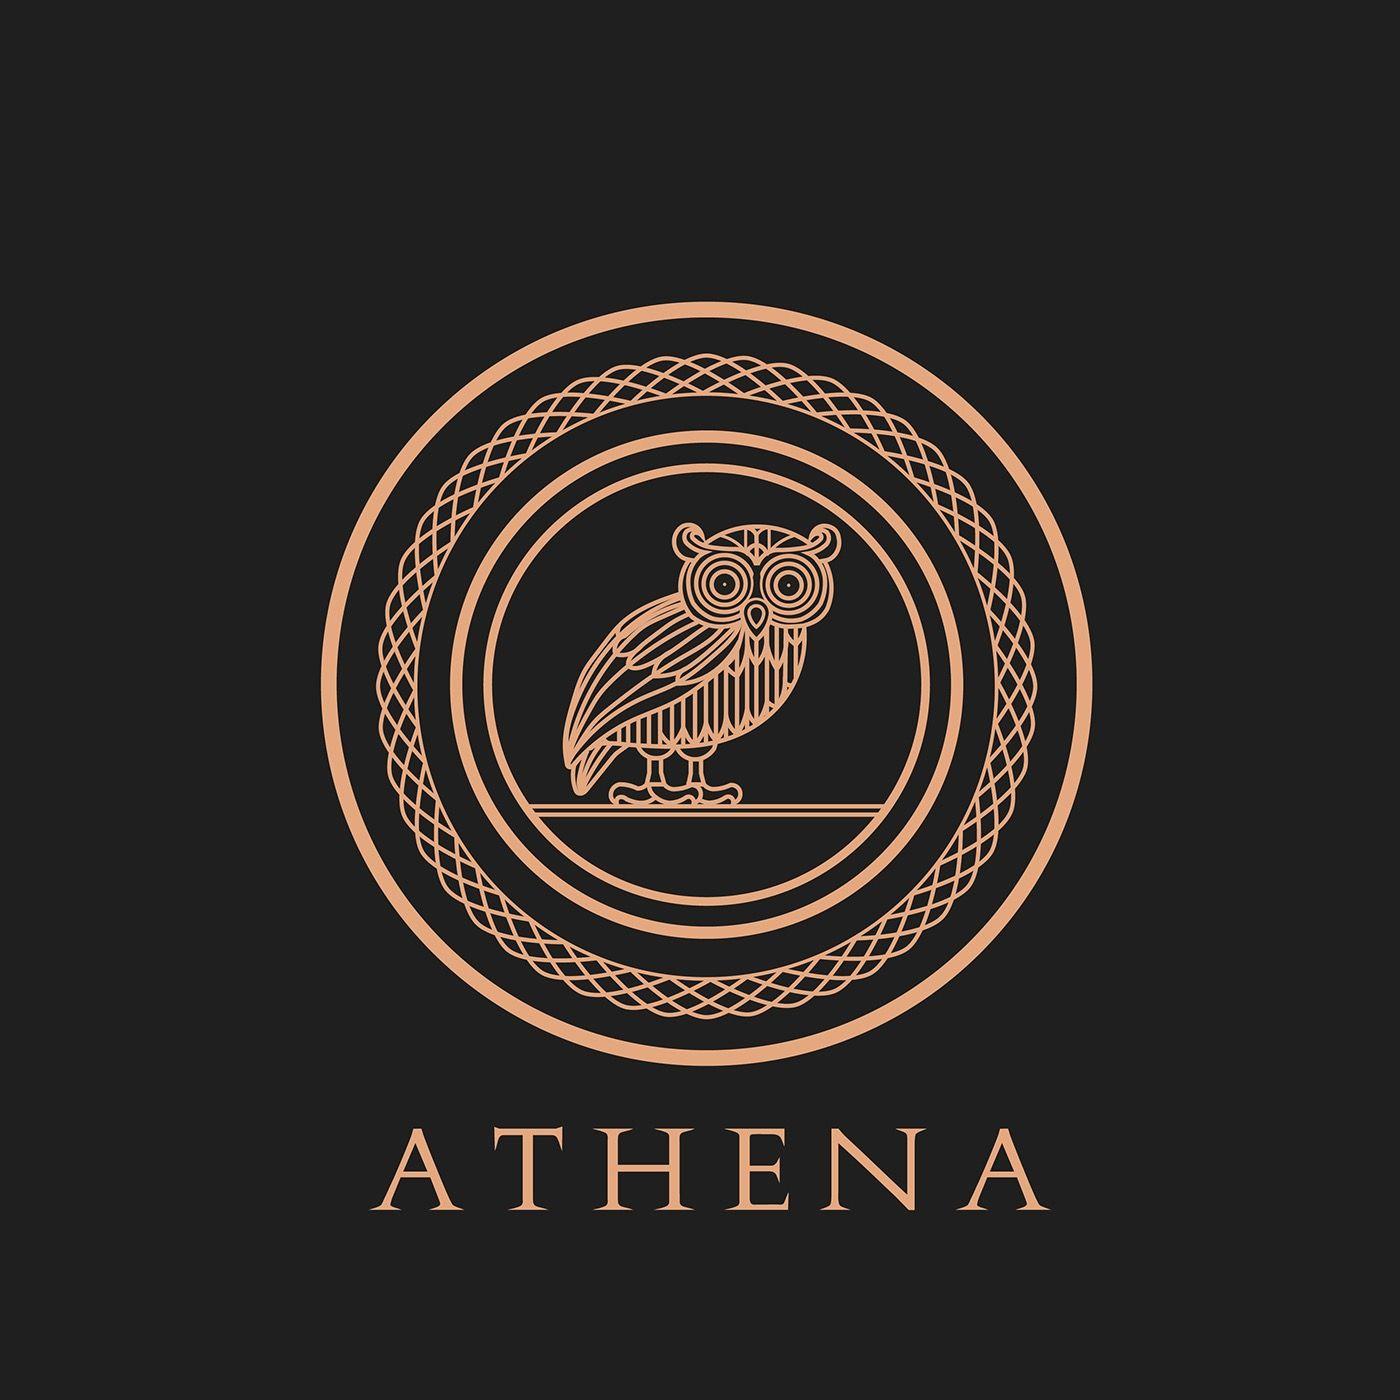 Athena Owl Logo - The Owl of Athena